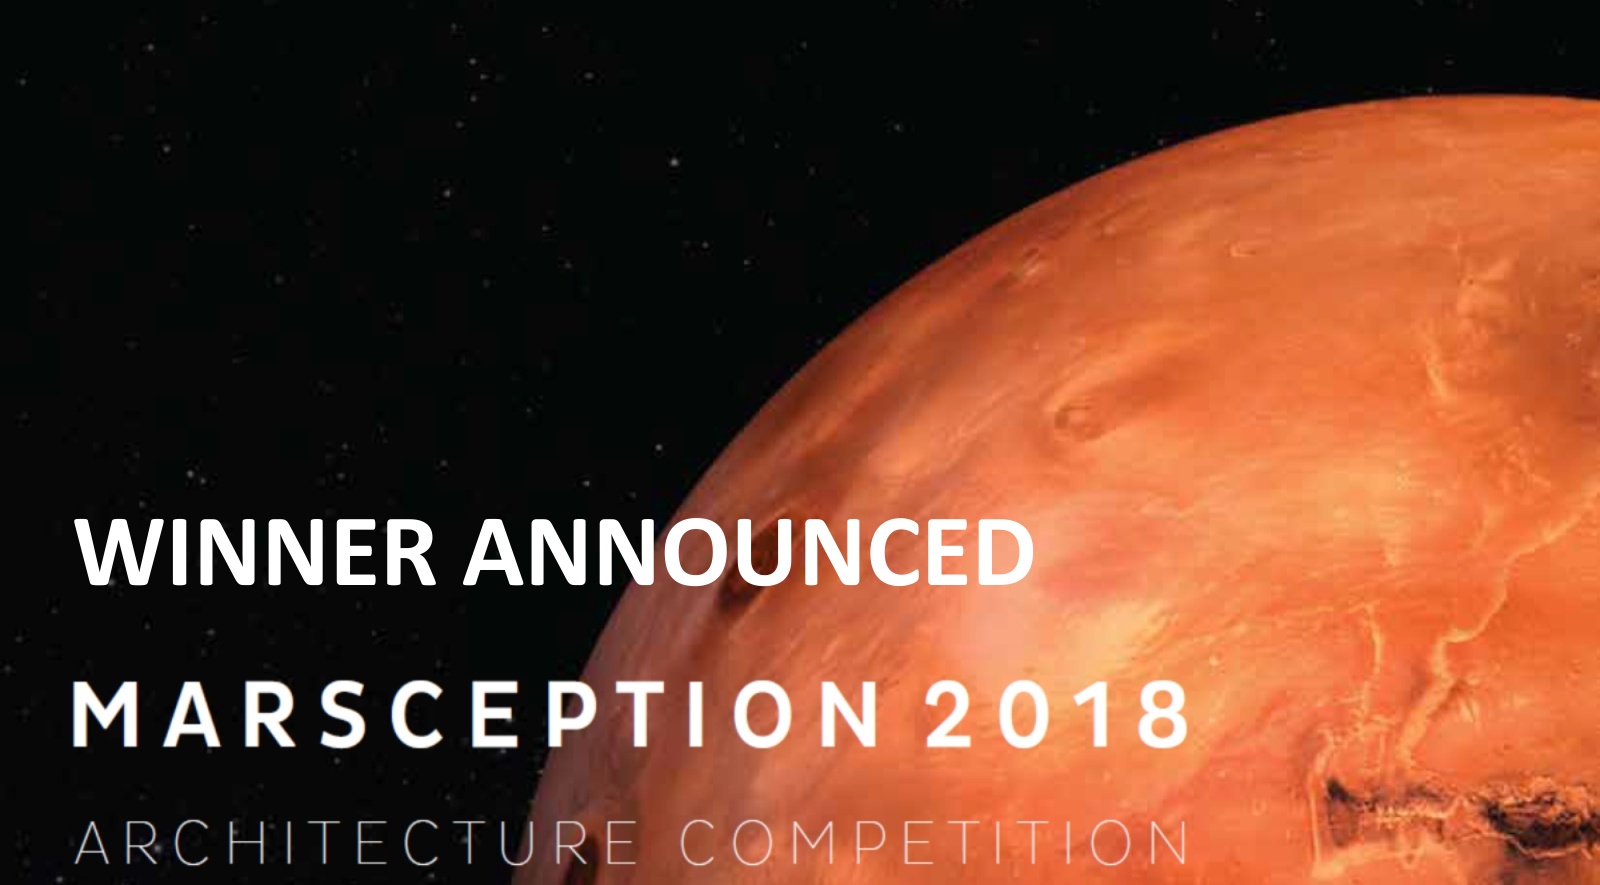 Marsception 2018